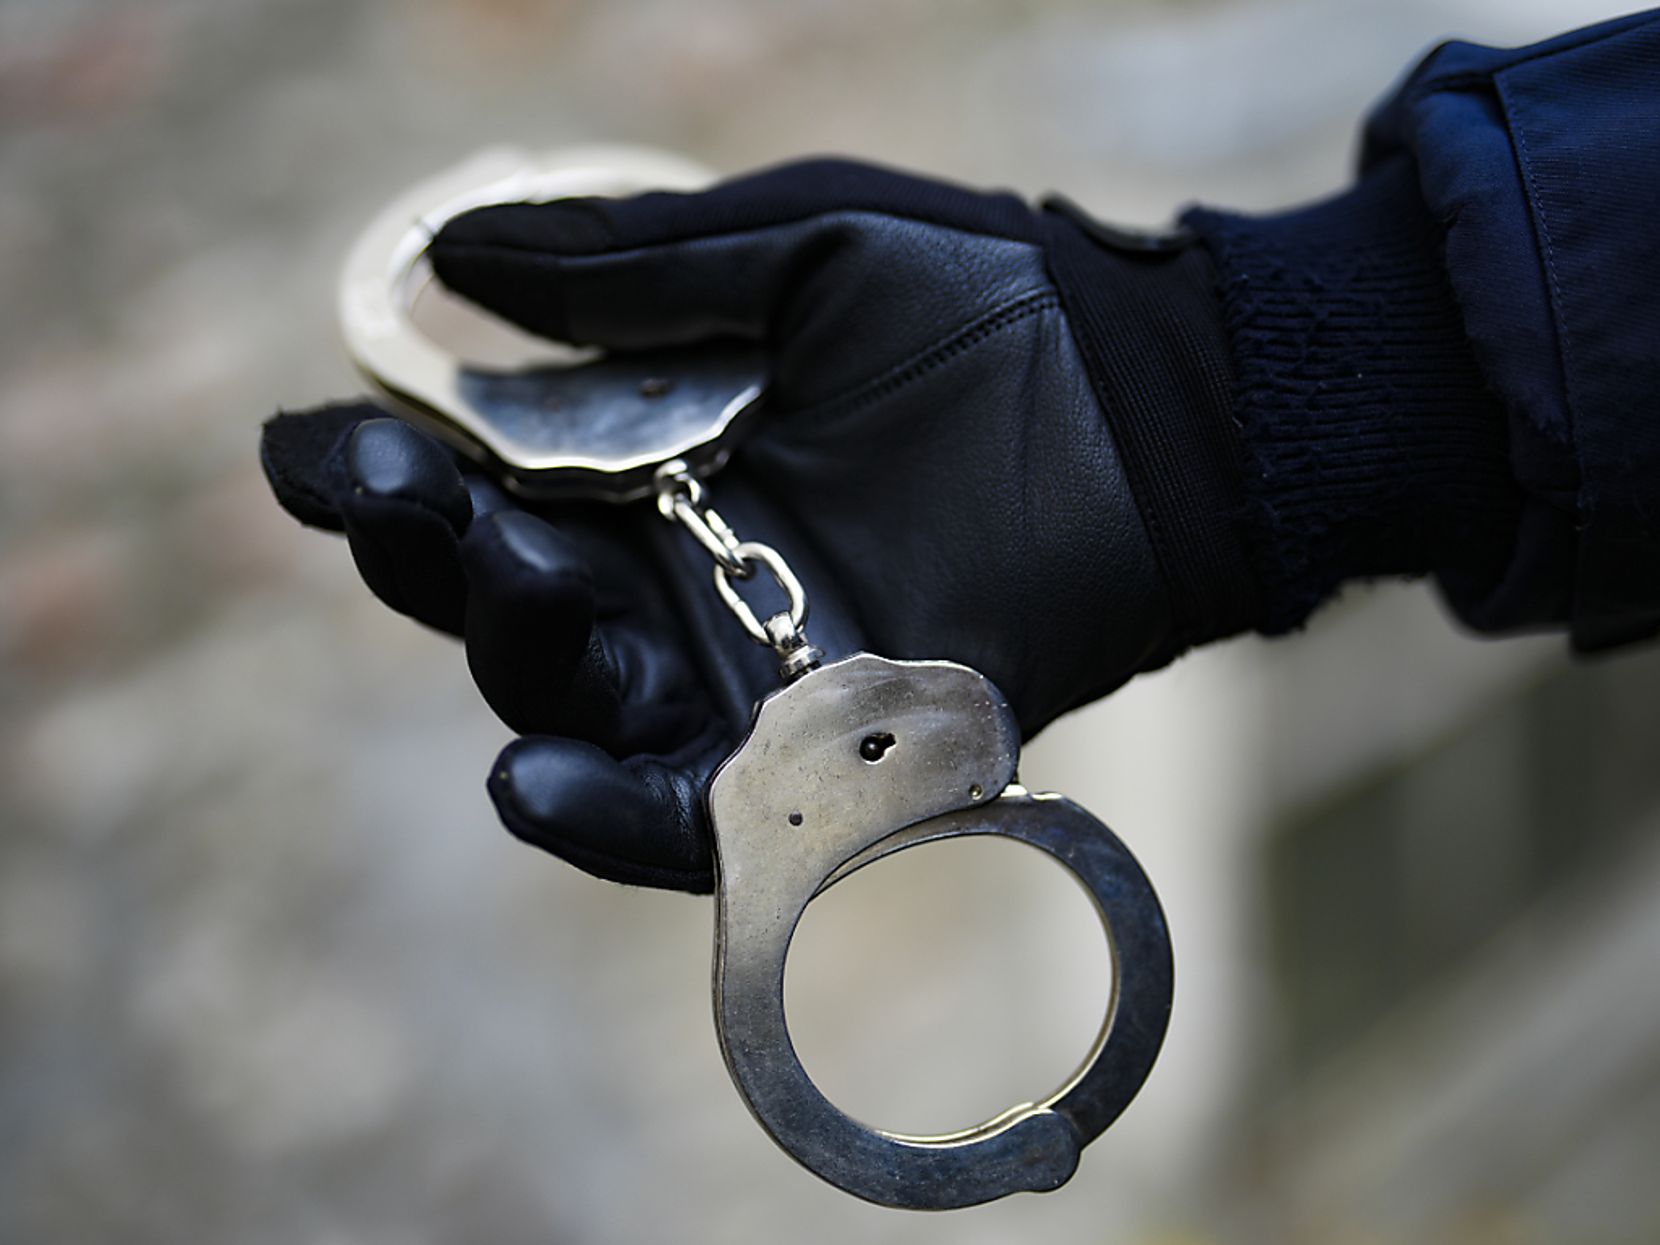 Die Zürcher Kantonspolizei hat vier mutmassliche Einbrecher verhaftet. (Symbolbild)